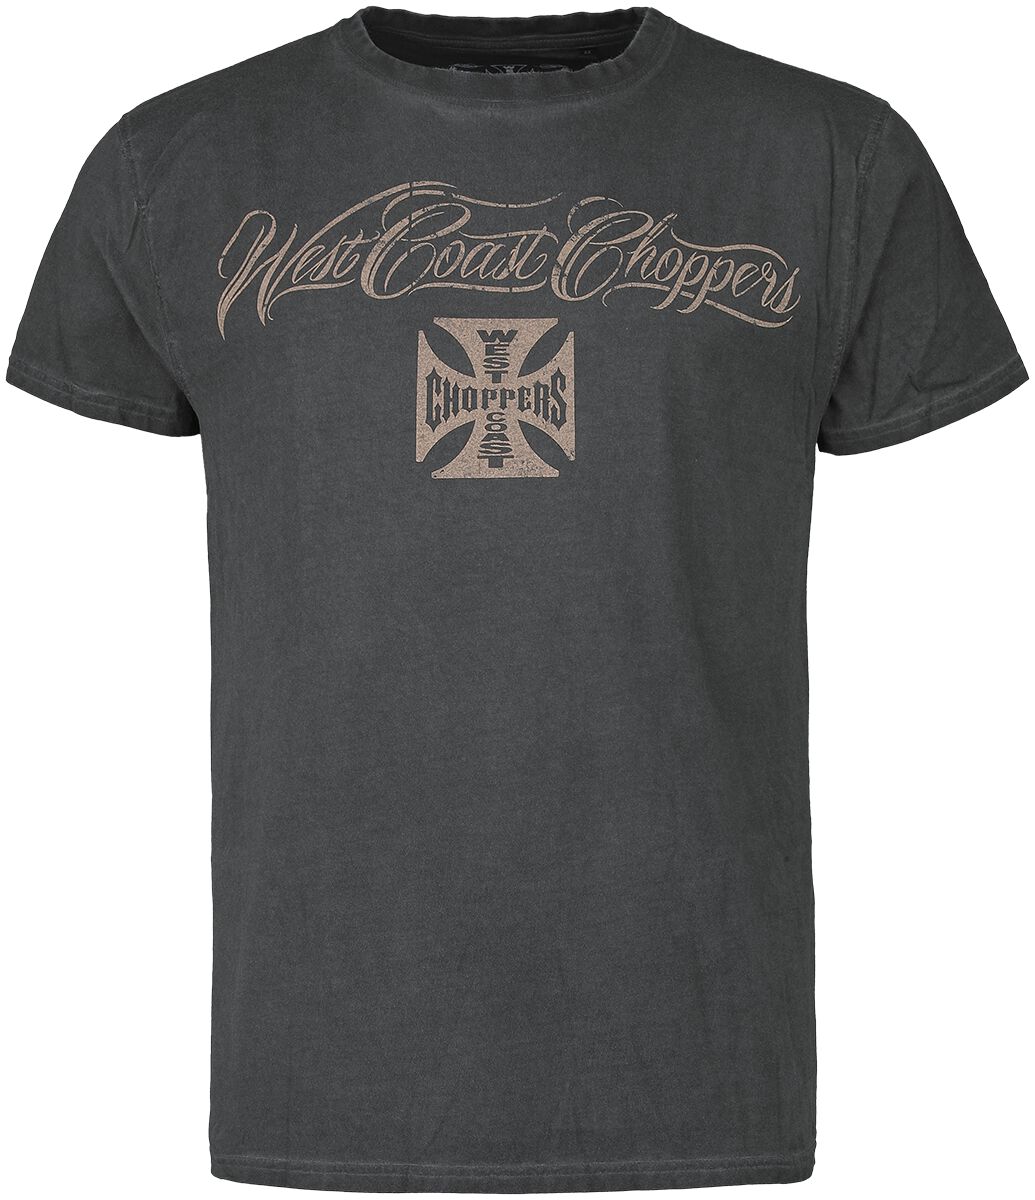 West Coast Choppers T-Shirt - Eagle Crest - S bis 4XL - für Männer - Größe M - anthrazit